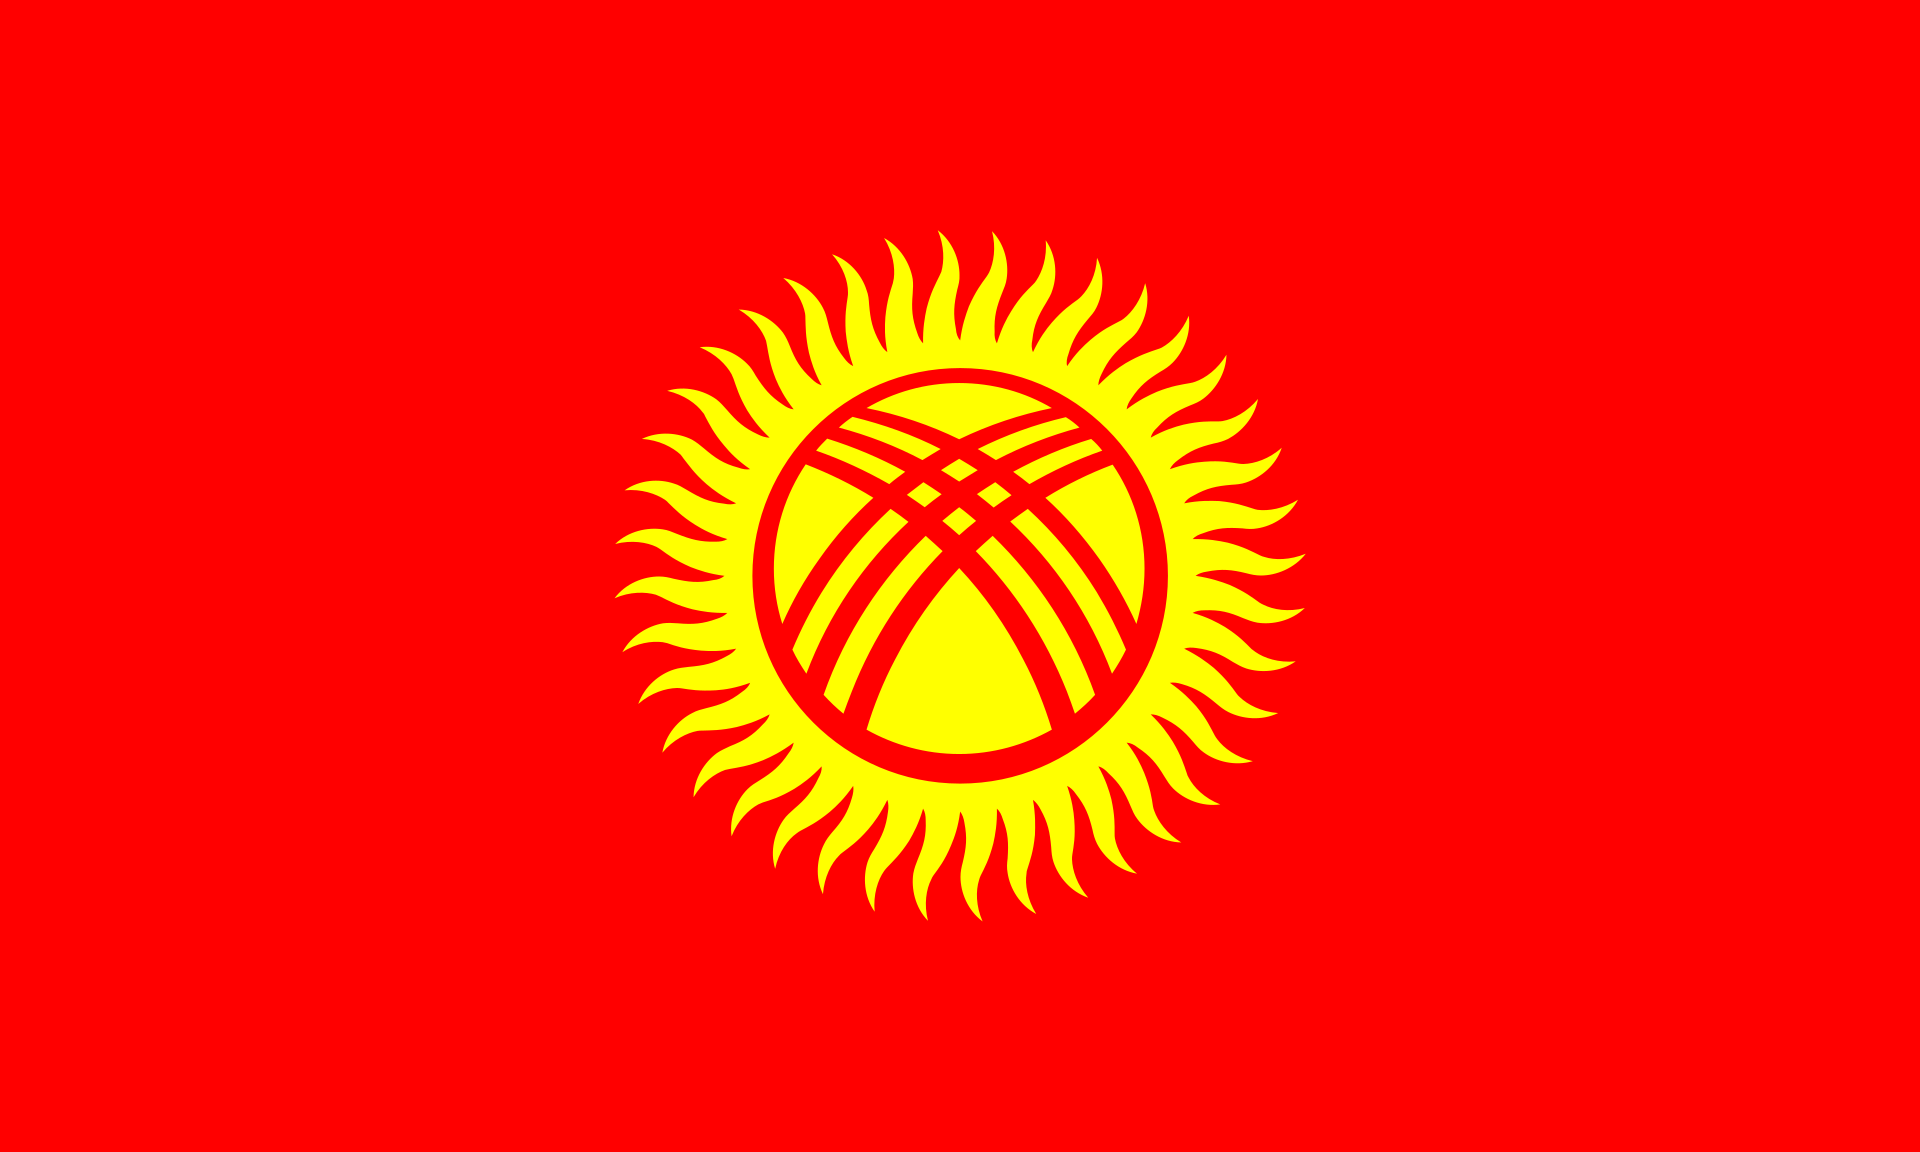 Kirgizisztán zászlaja